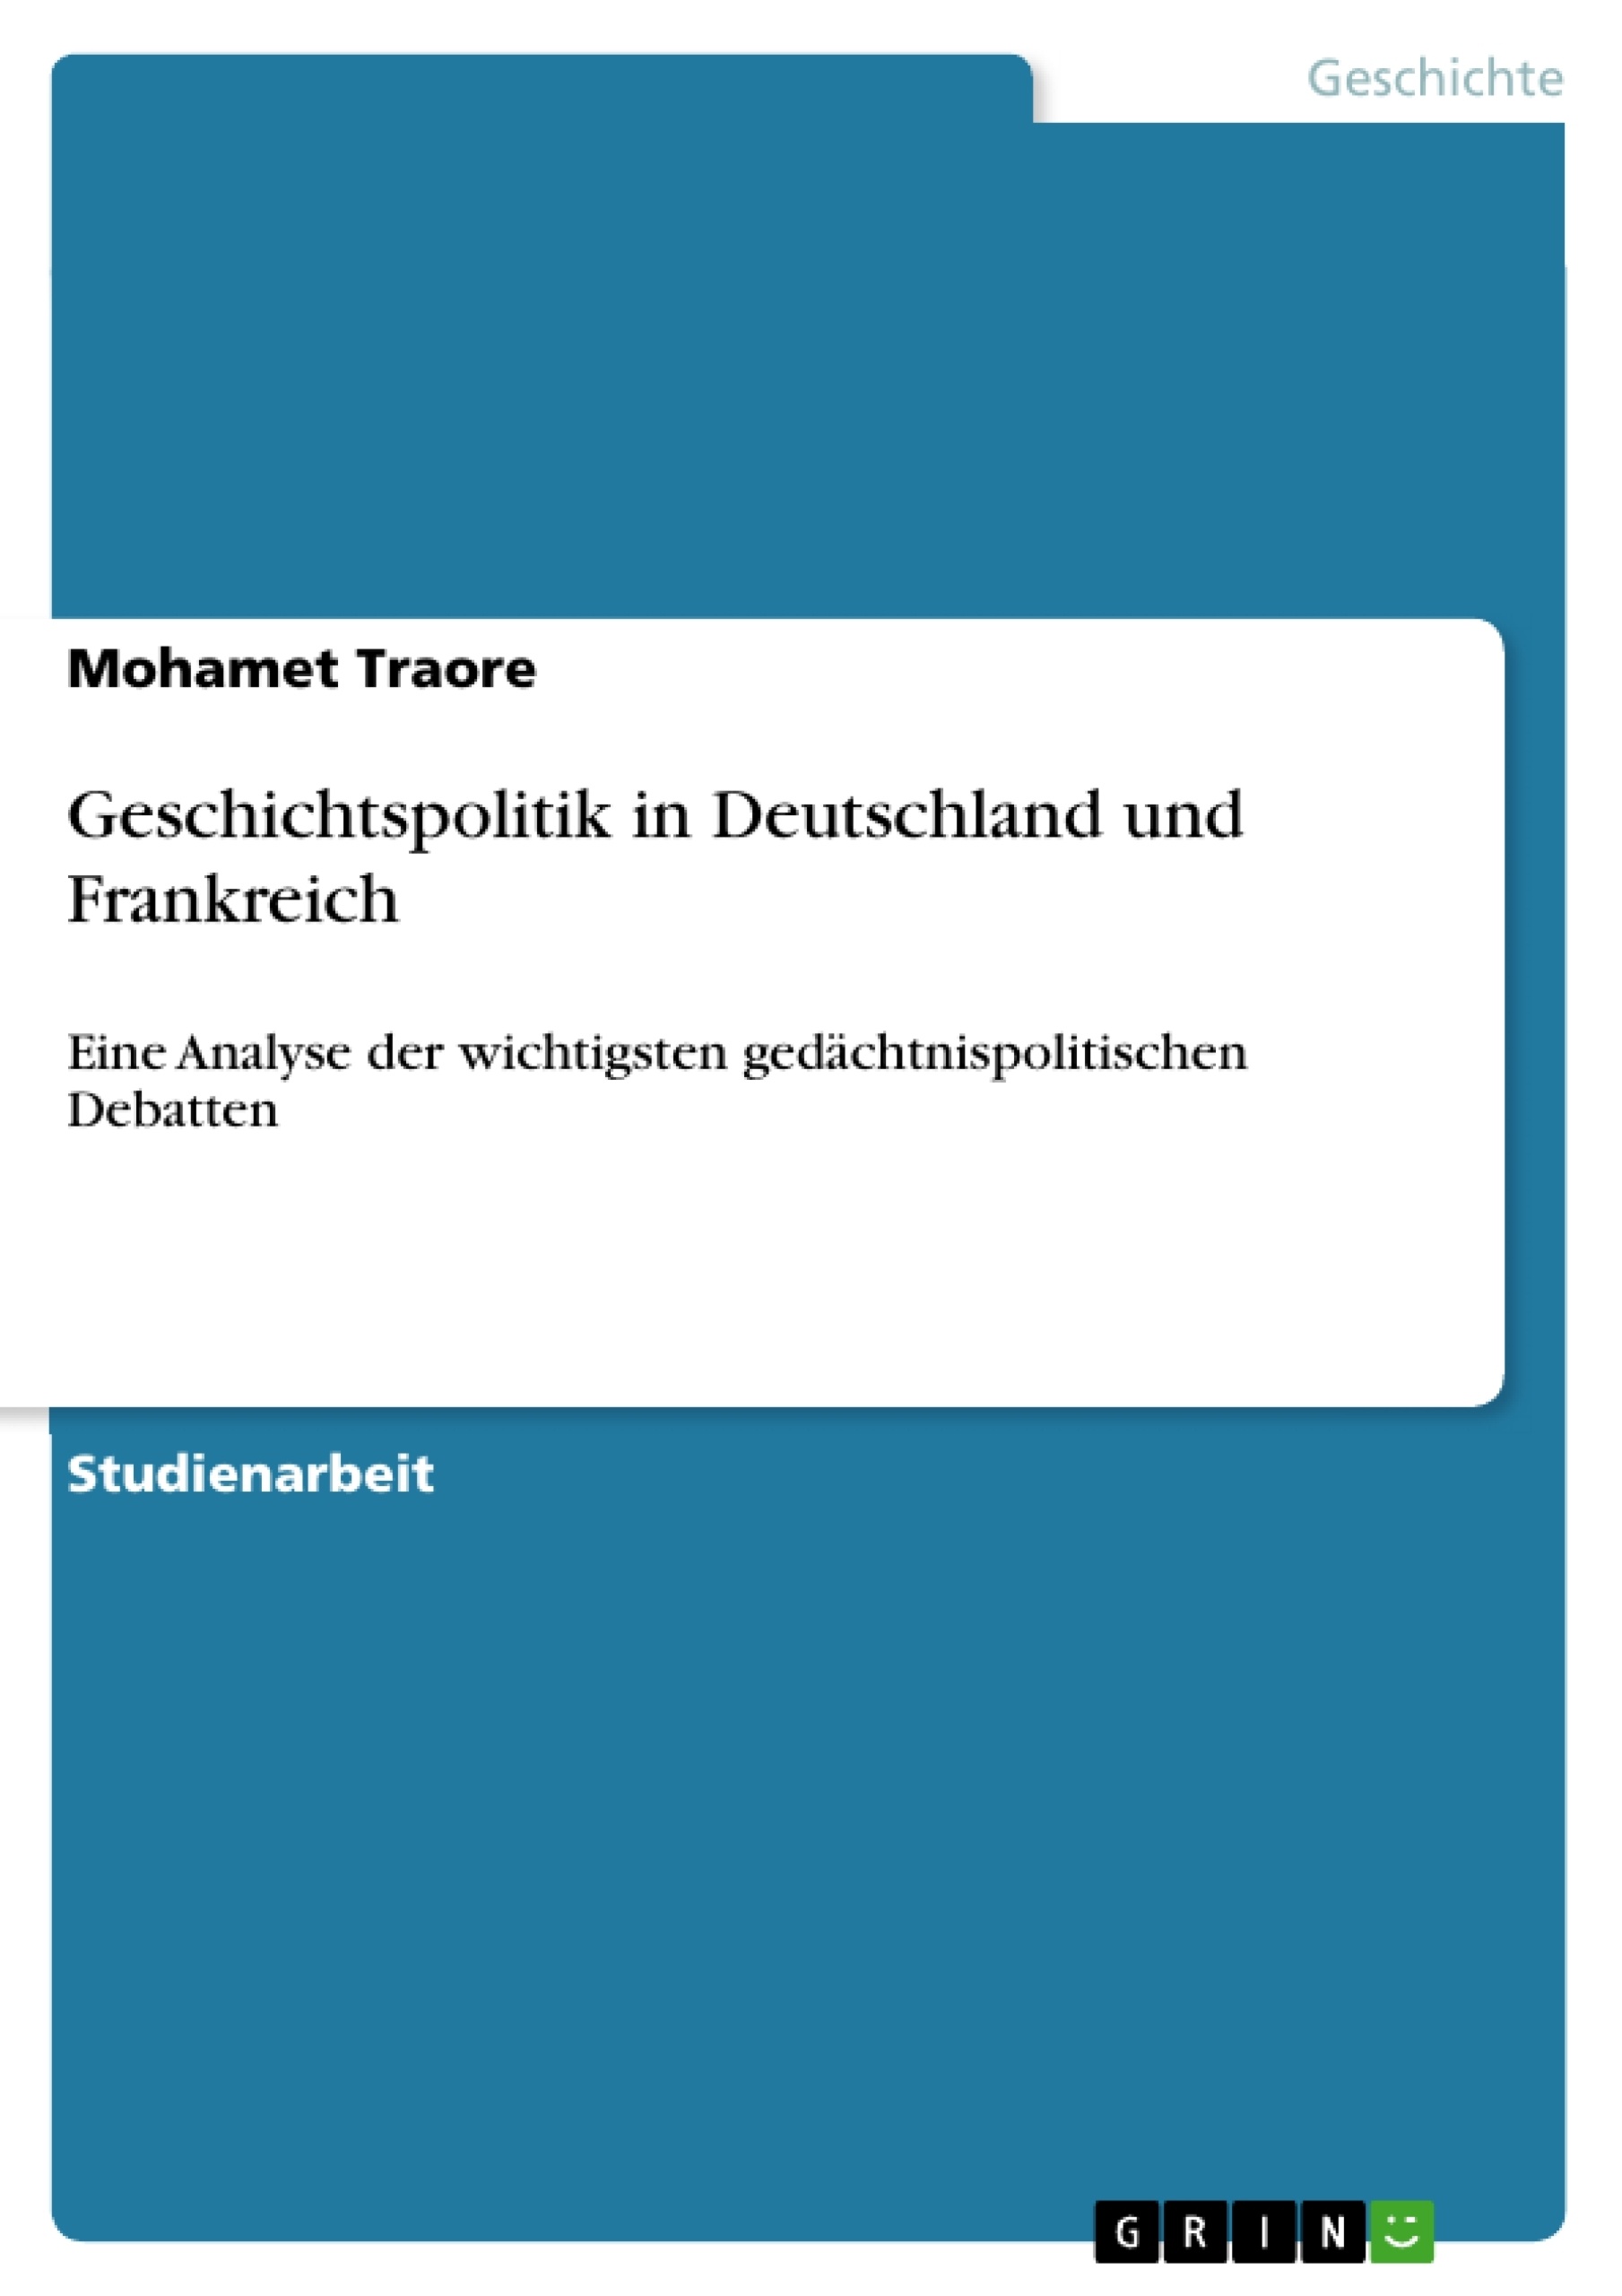 Title: Geschichtspolitik in Deutschland und Frankreich